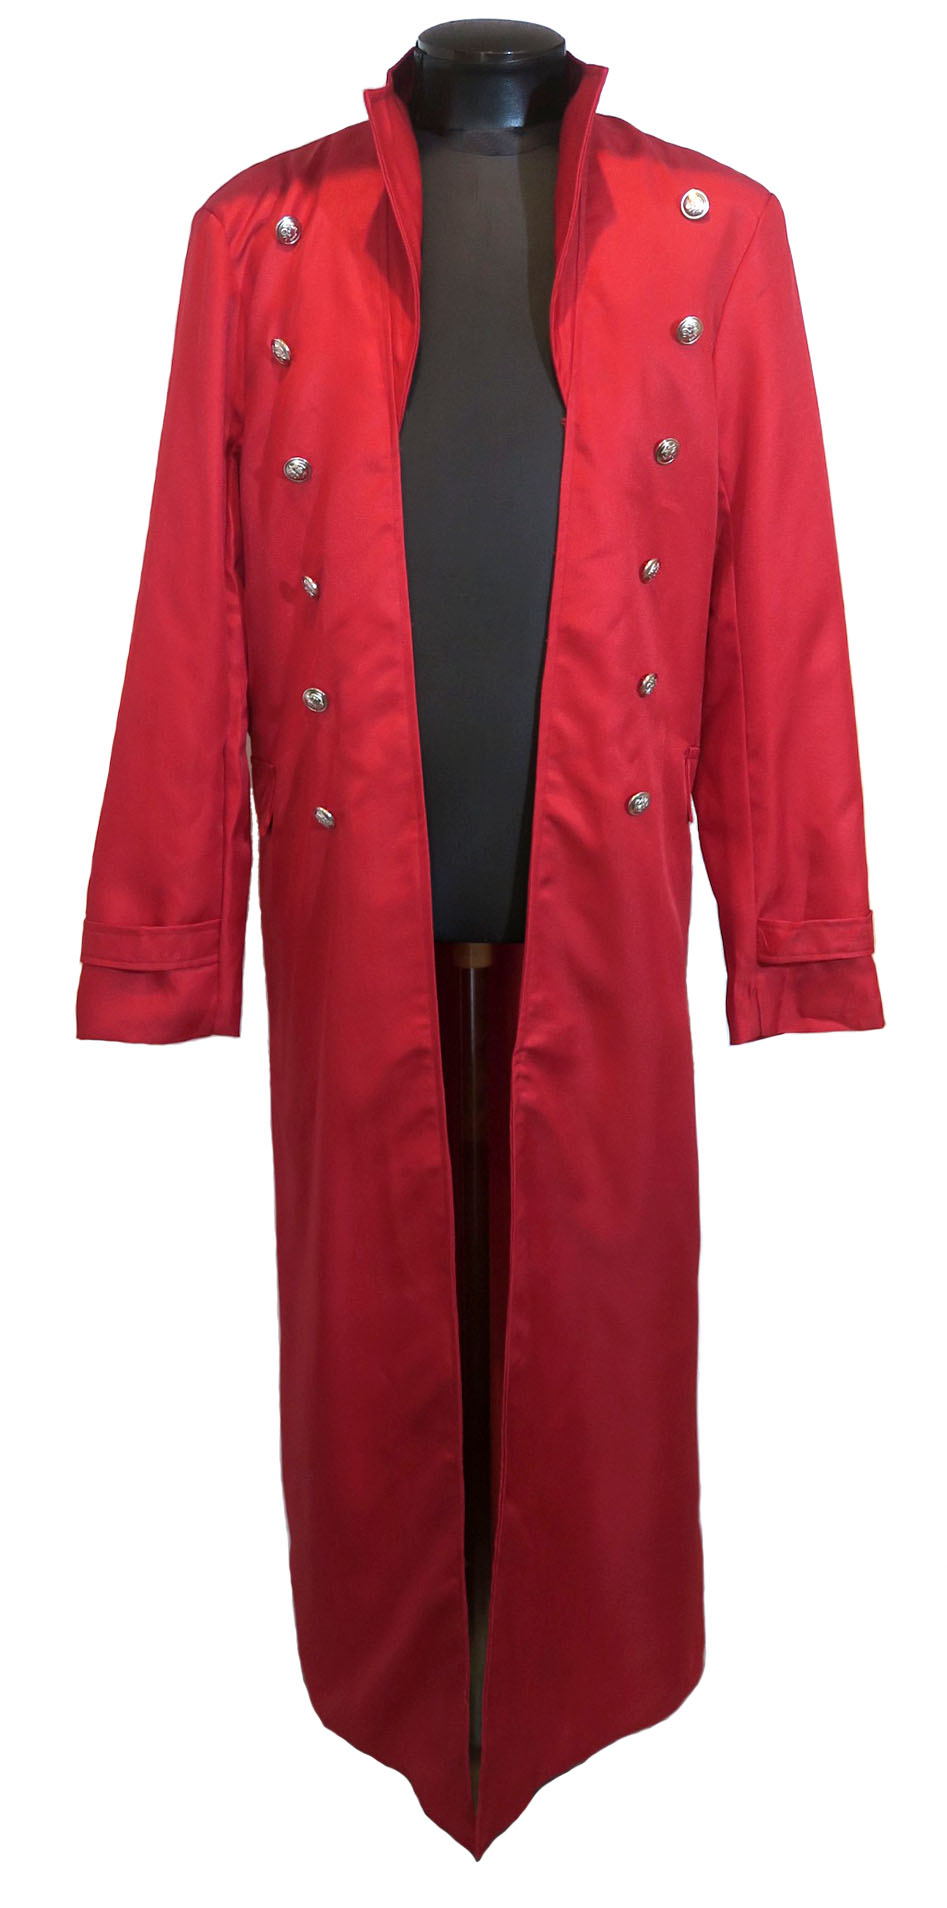 真っ赤な超ロング丈 中世ヨーロッパ 貴族コート 騎士コート 赤 レッド RED ゴシック ロックファッション 大きなサイズ ビッグサイズ  ヴィジュアル系 ステージ衣装 パーティー衣装 ハロウィン 仮装 2021春夏新色